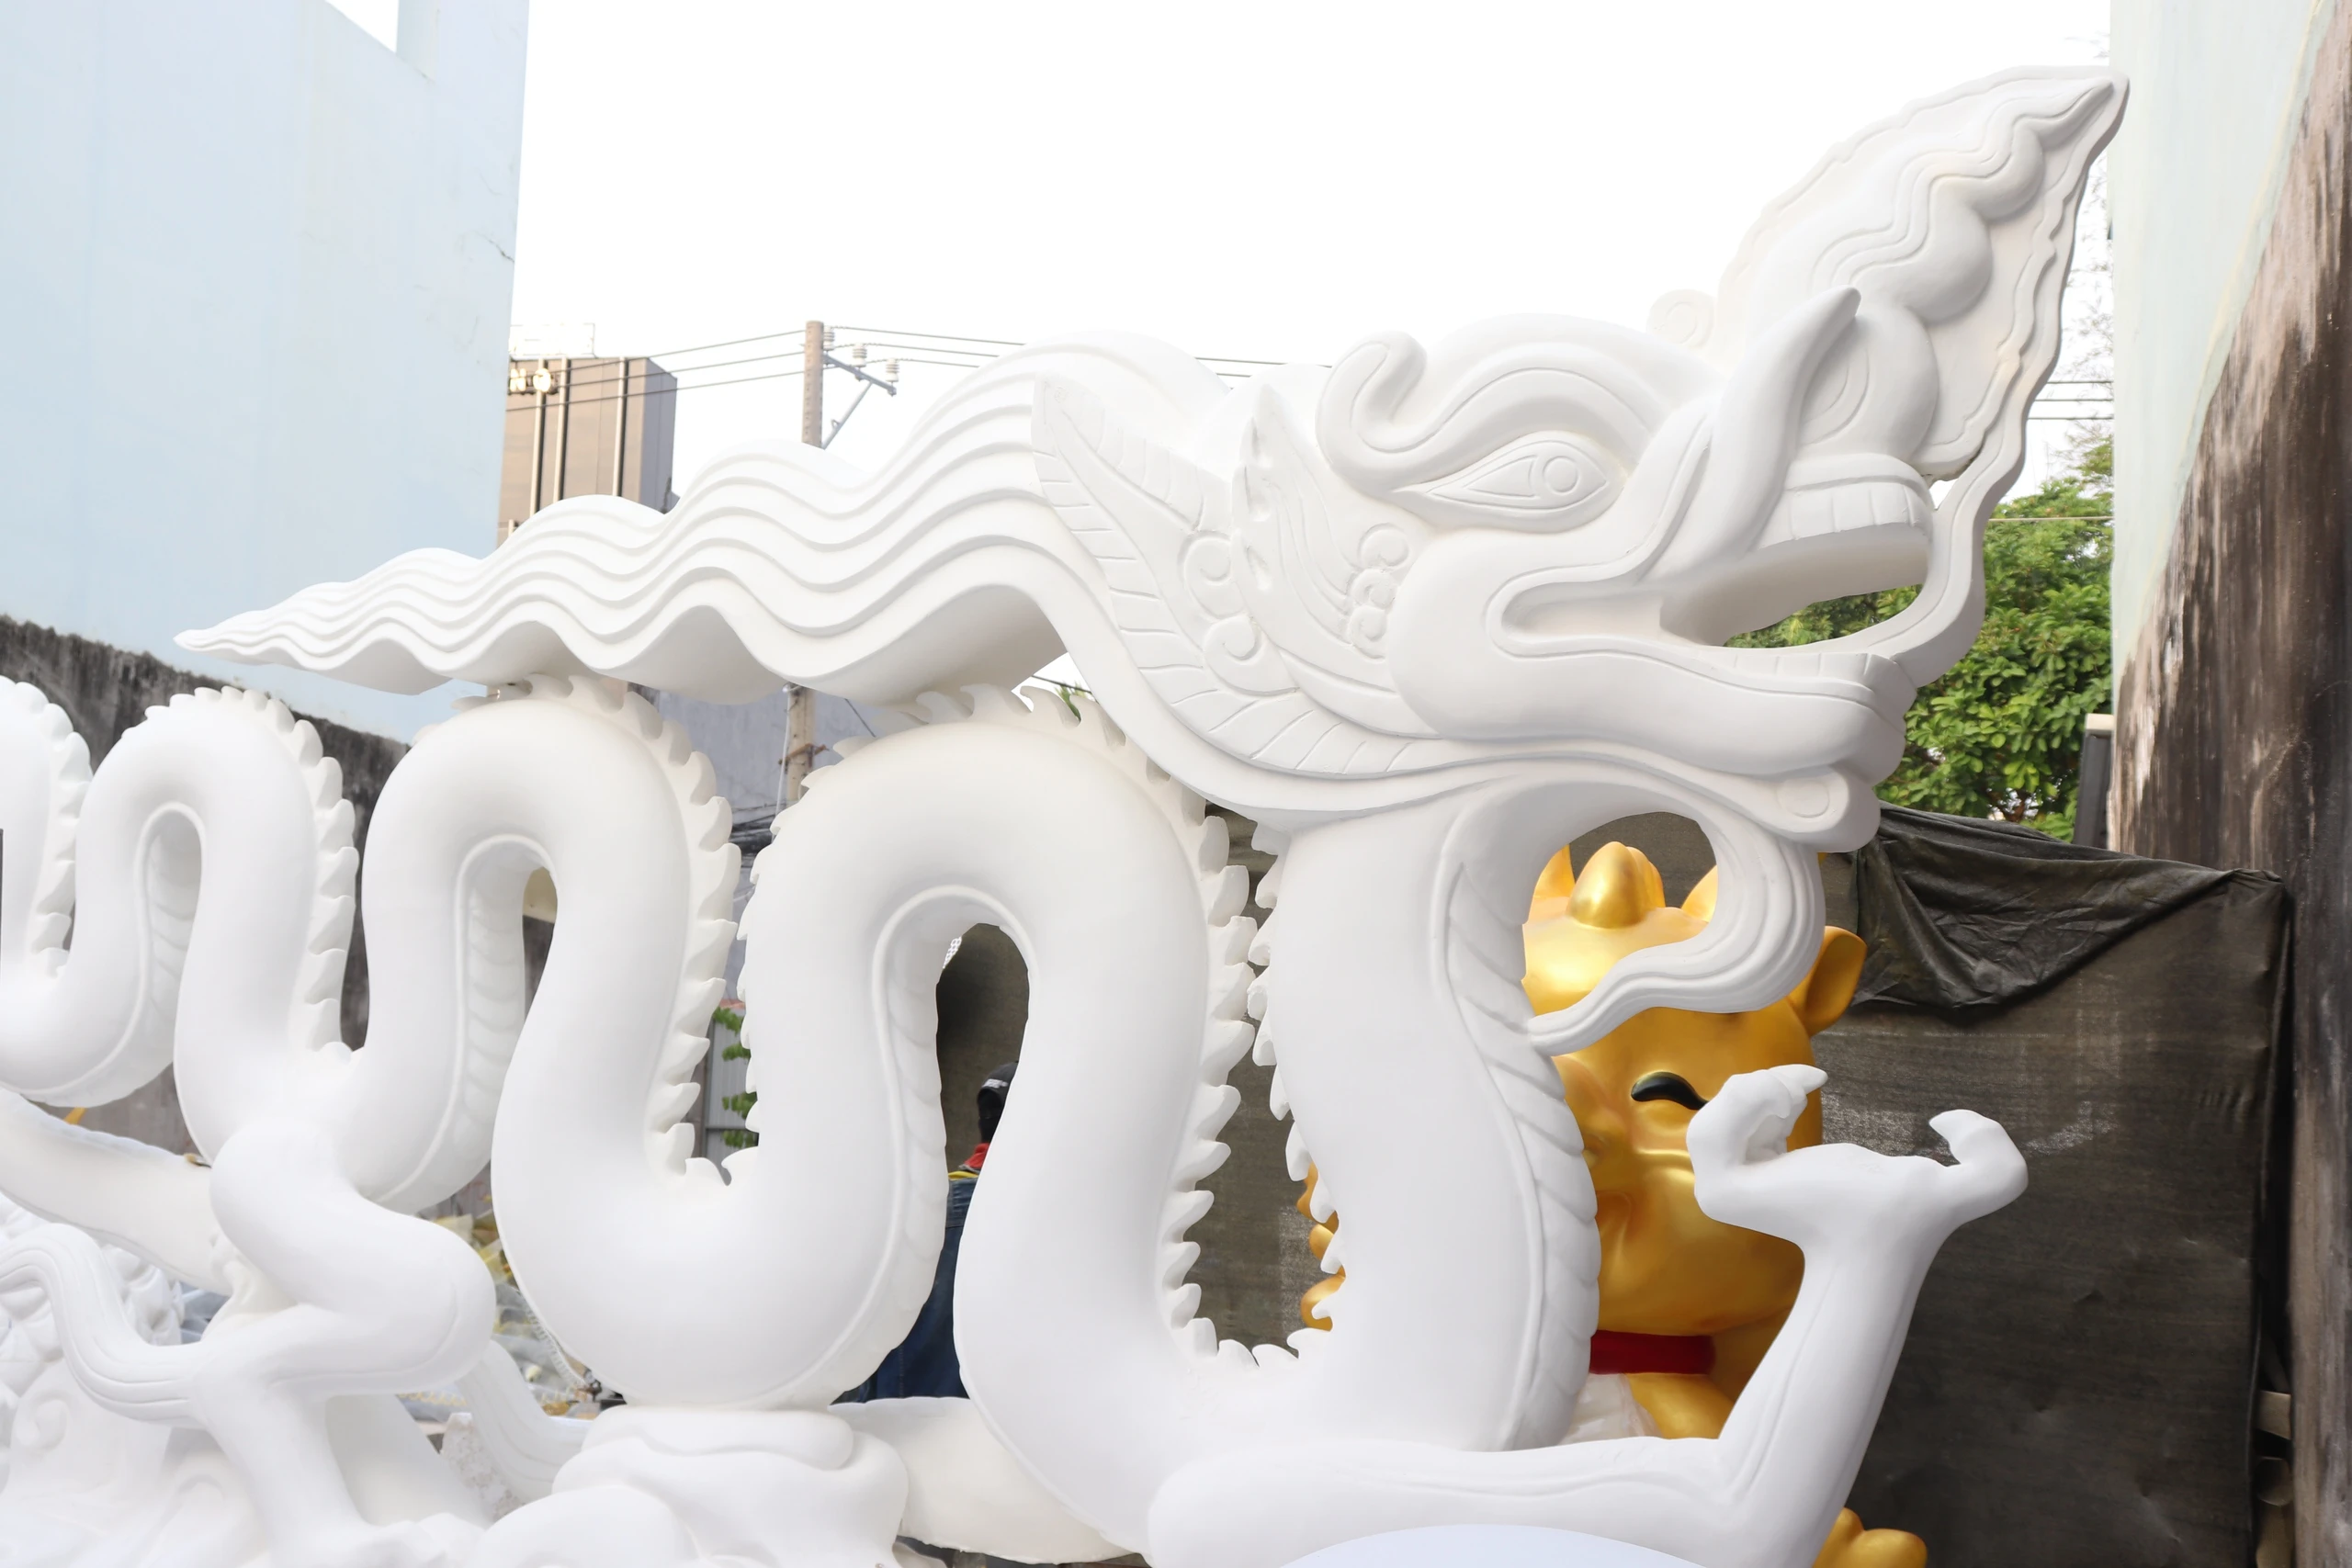 Linh vật rồng khổng lồ dài 120 mét cho đường hoa Nguyễn Huệ được làm thế nào?